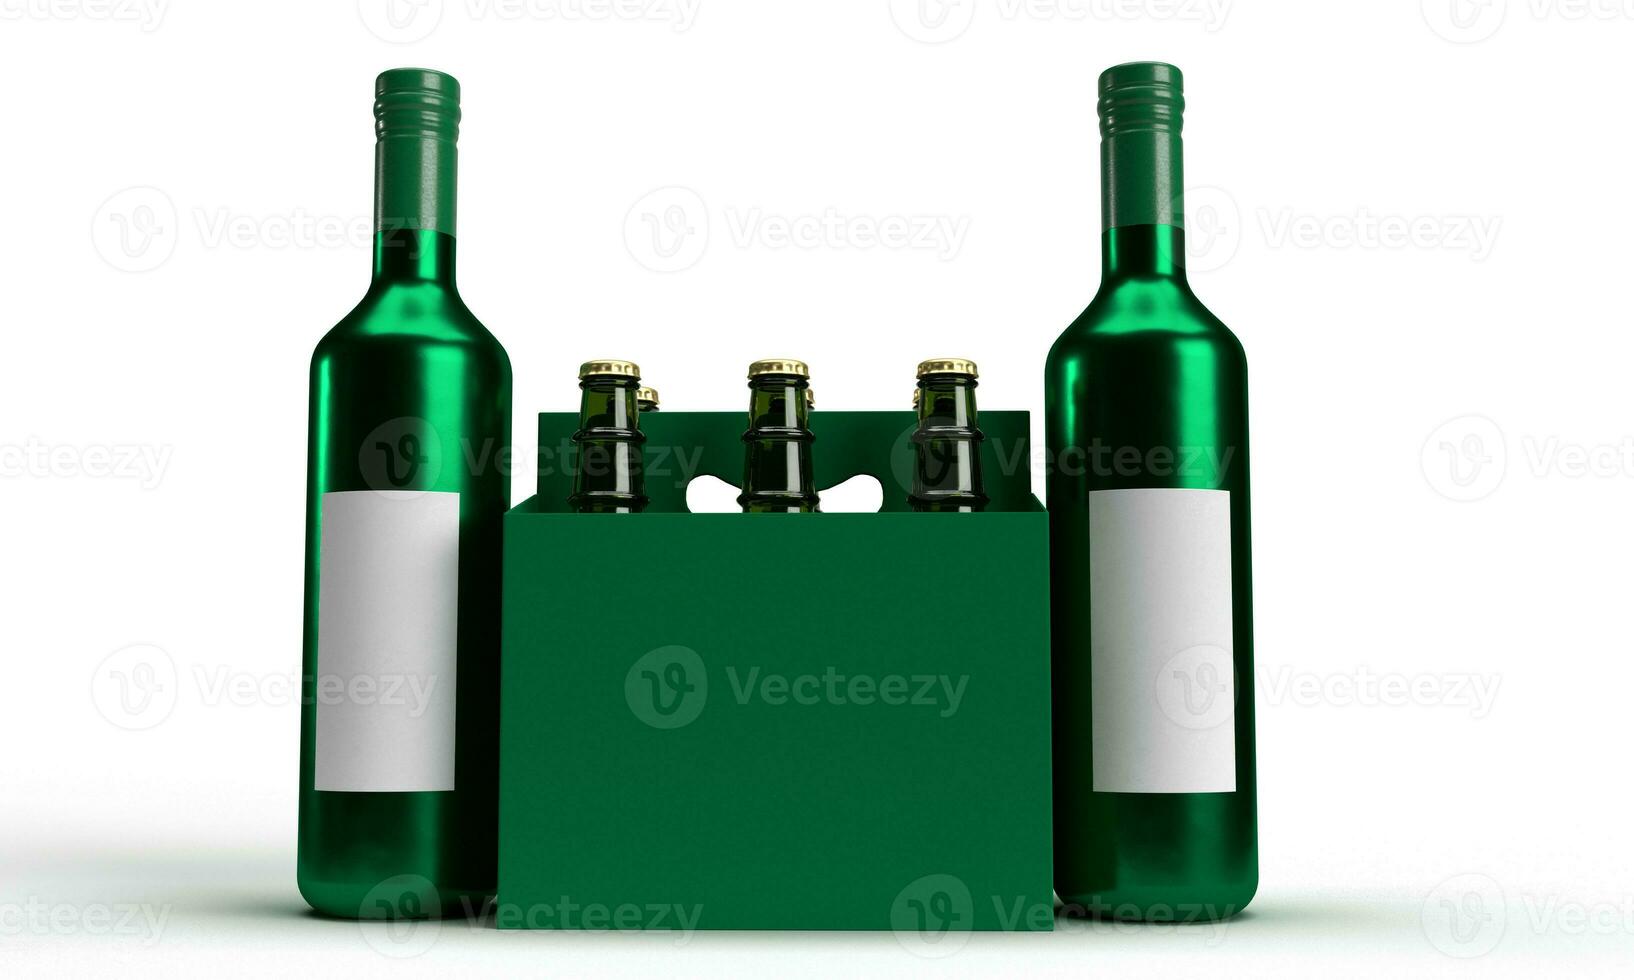 verde colore bottiglia gruppo oggetto modello vuoto bianca colore simbolo decorazione ornamento santo patrick giorno st patrick giorno trifoglio Irlanda irlandesi fortuna trifoglio 17 diciassette marzo fata cultura celebrare foto